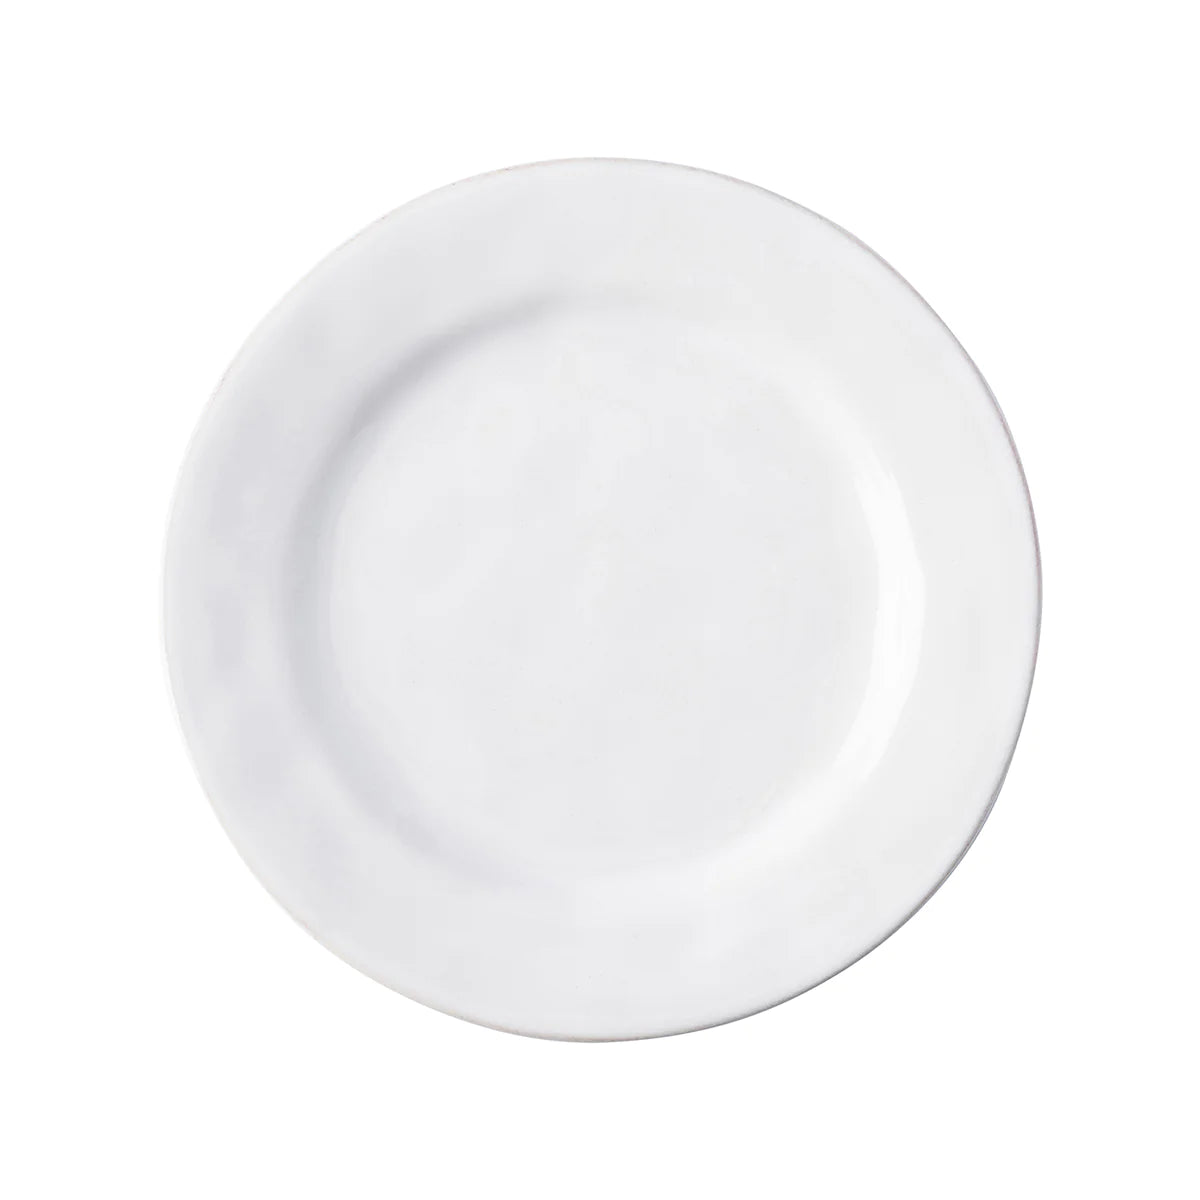 Puro Dessert/Salad Plate - Whitewash